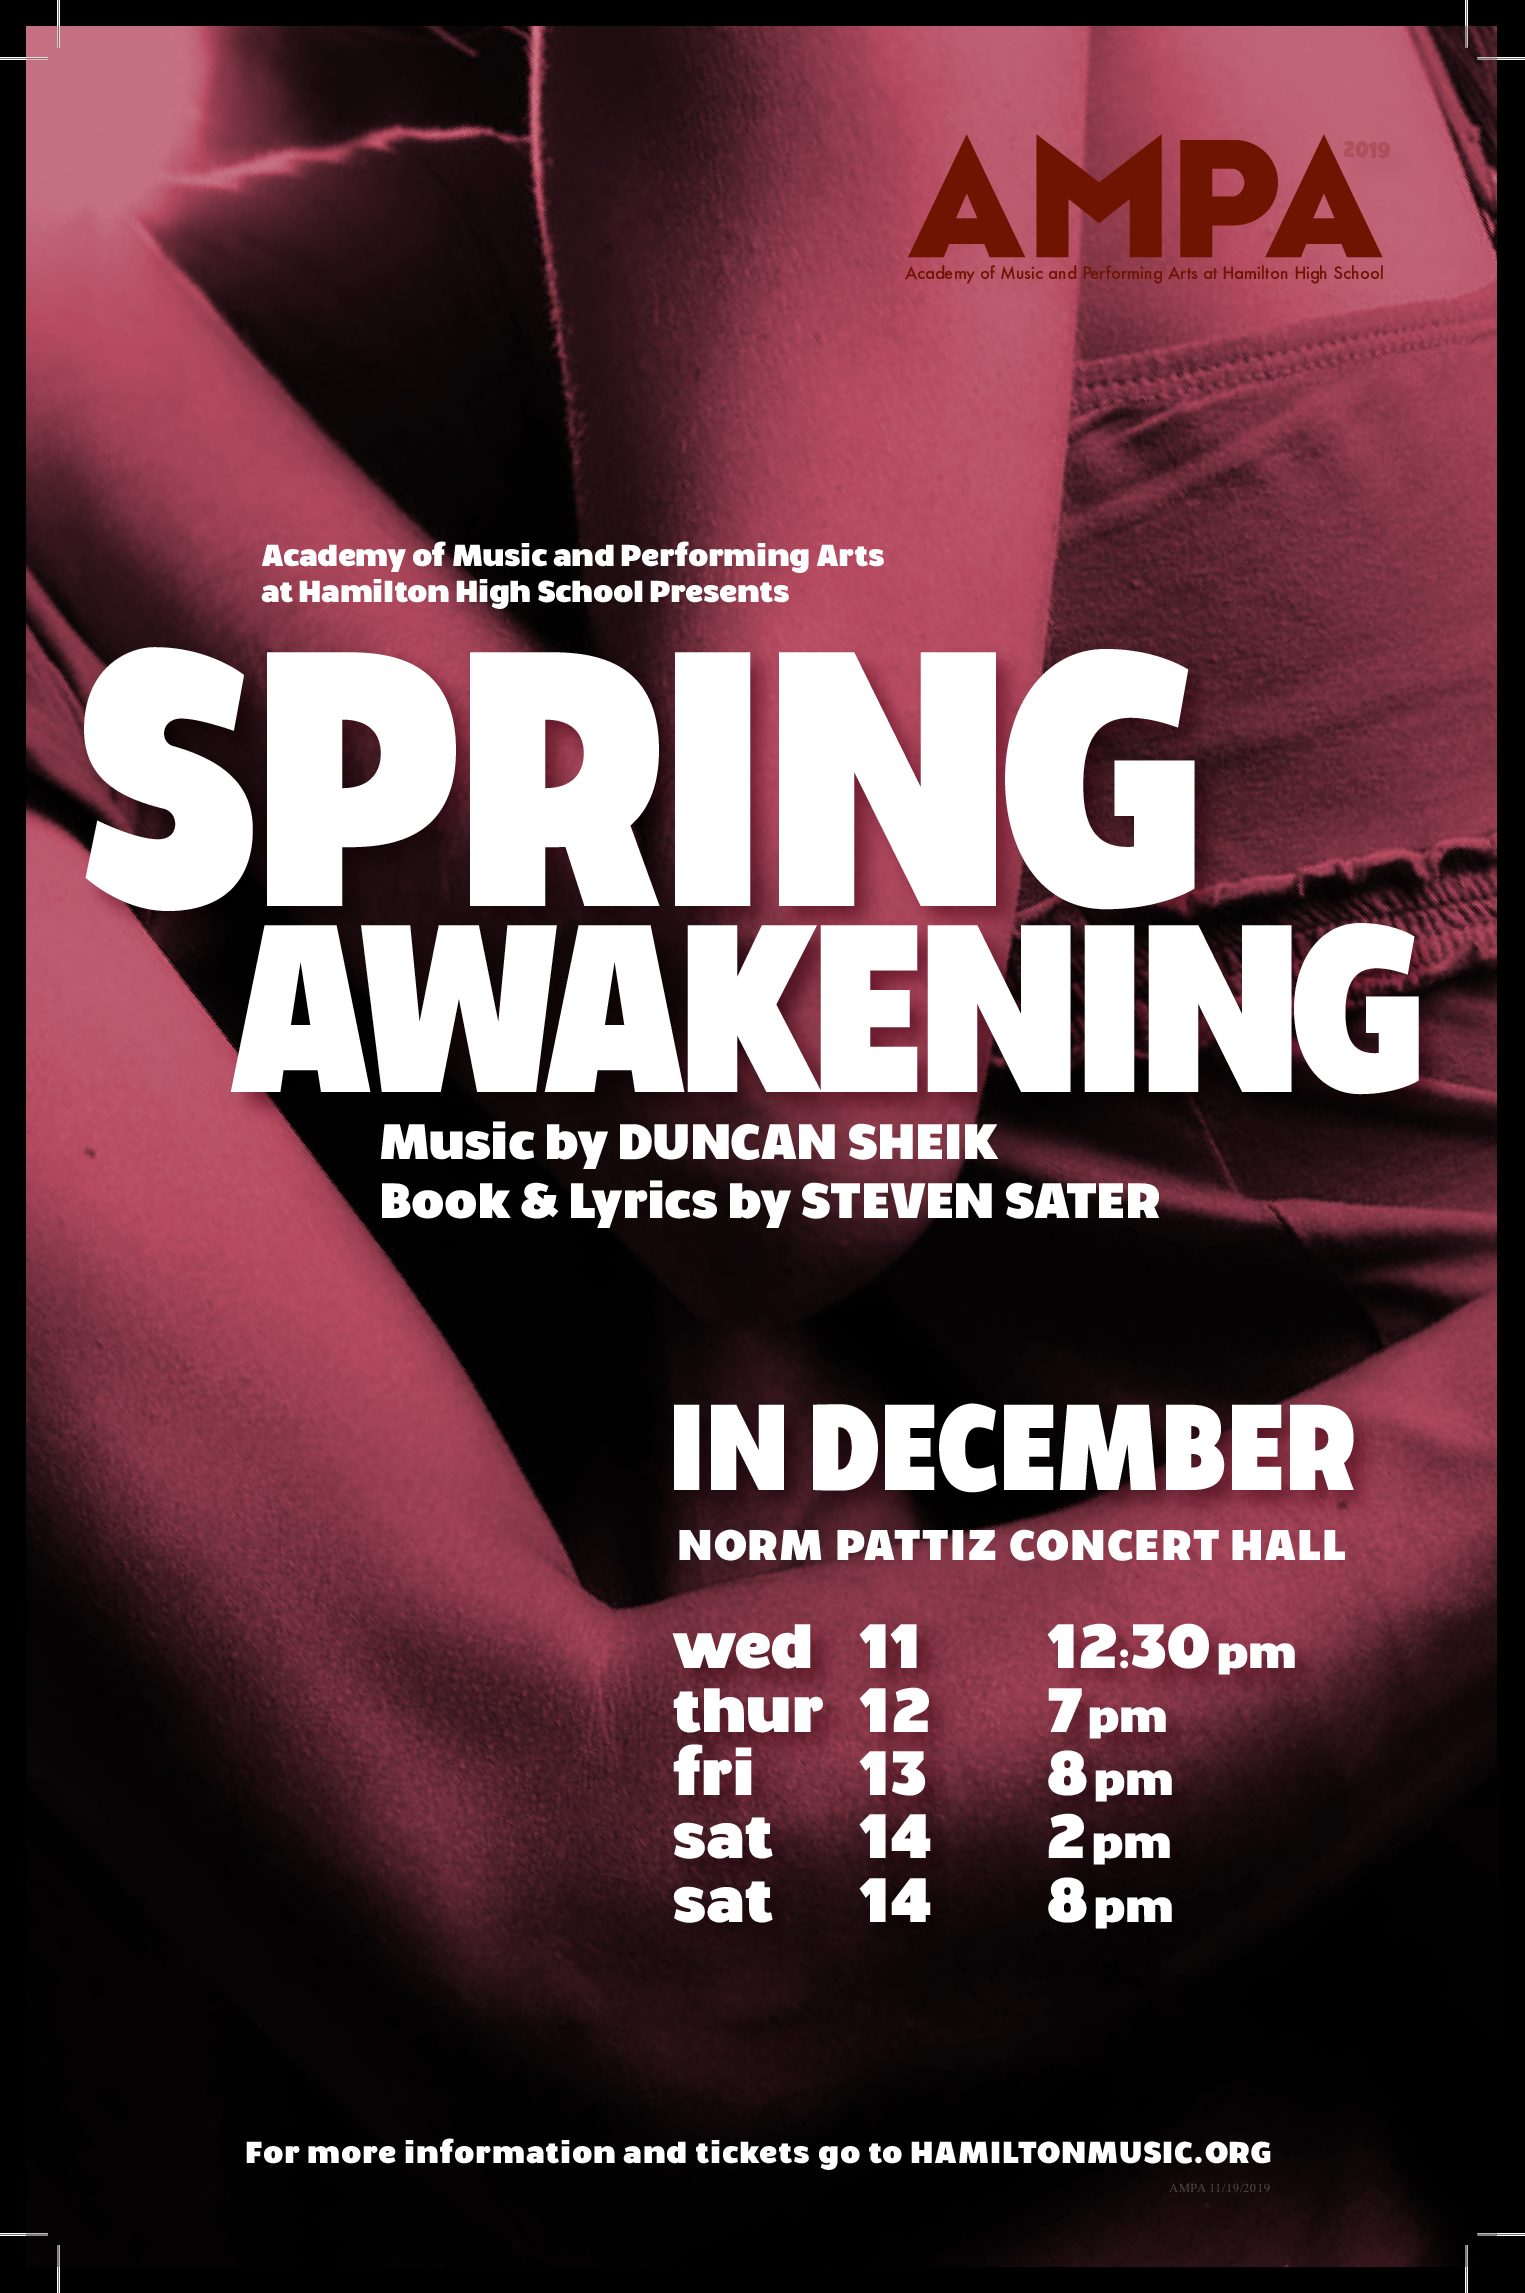 Spring Awakening Musical - AMPA - Academy of Music & Performing Arts at